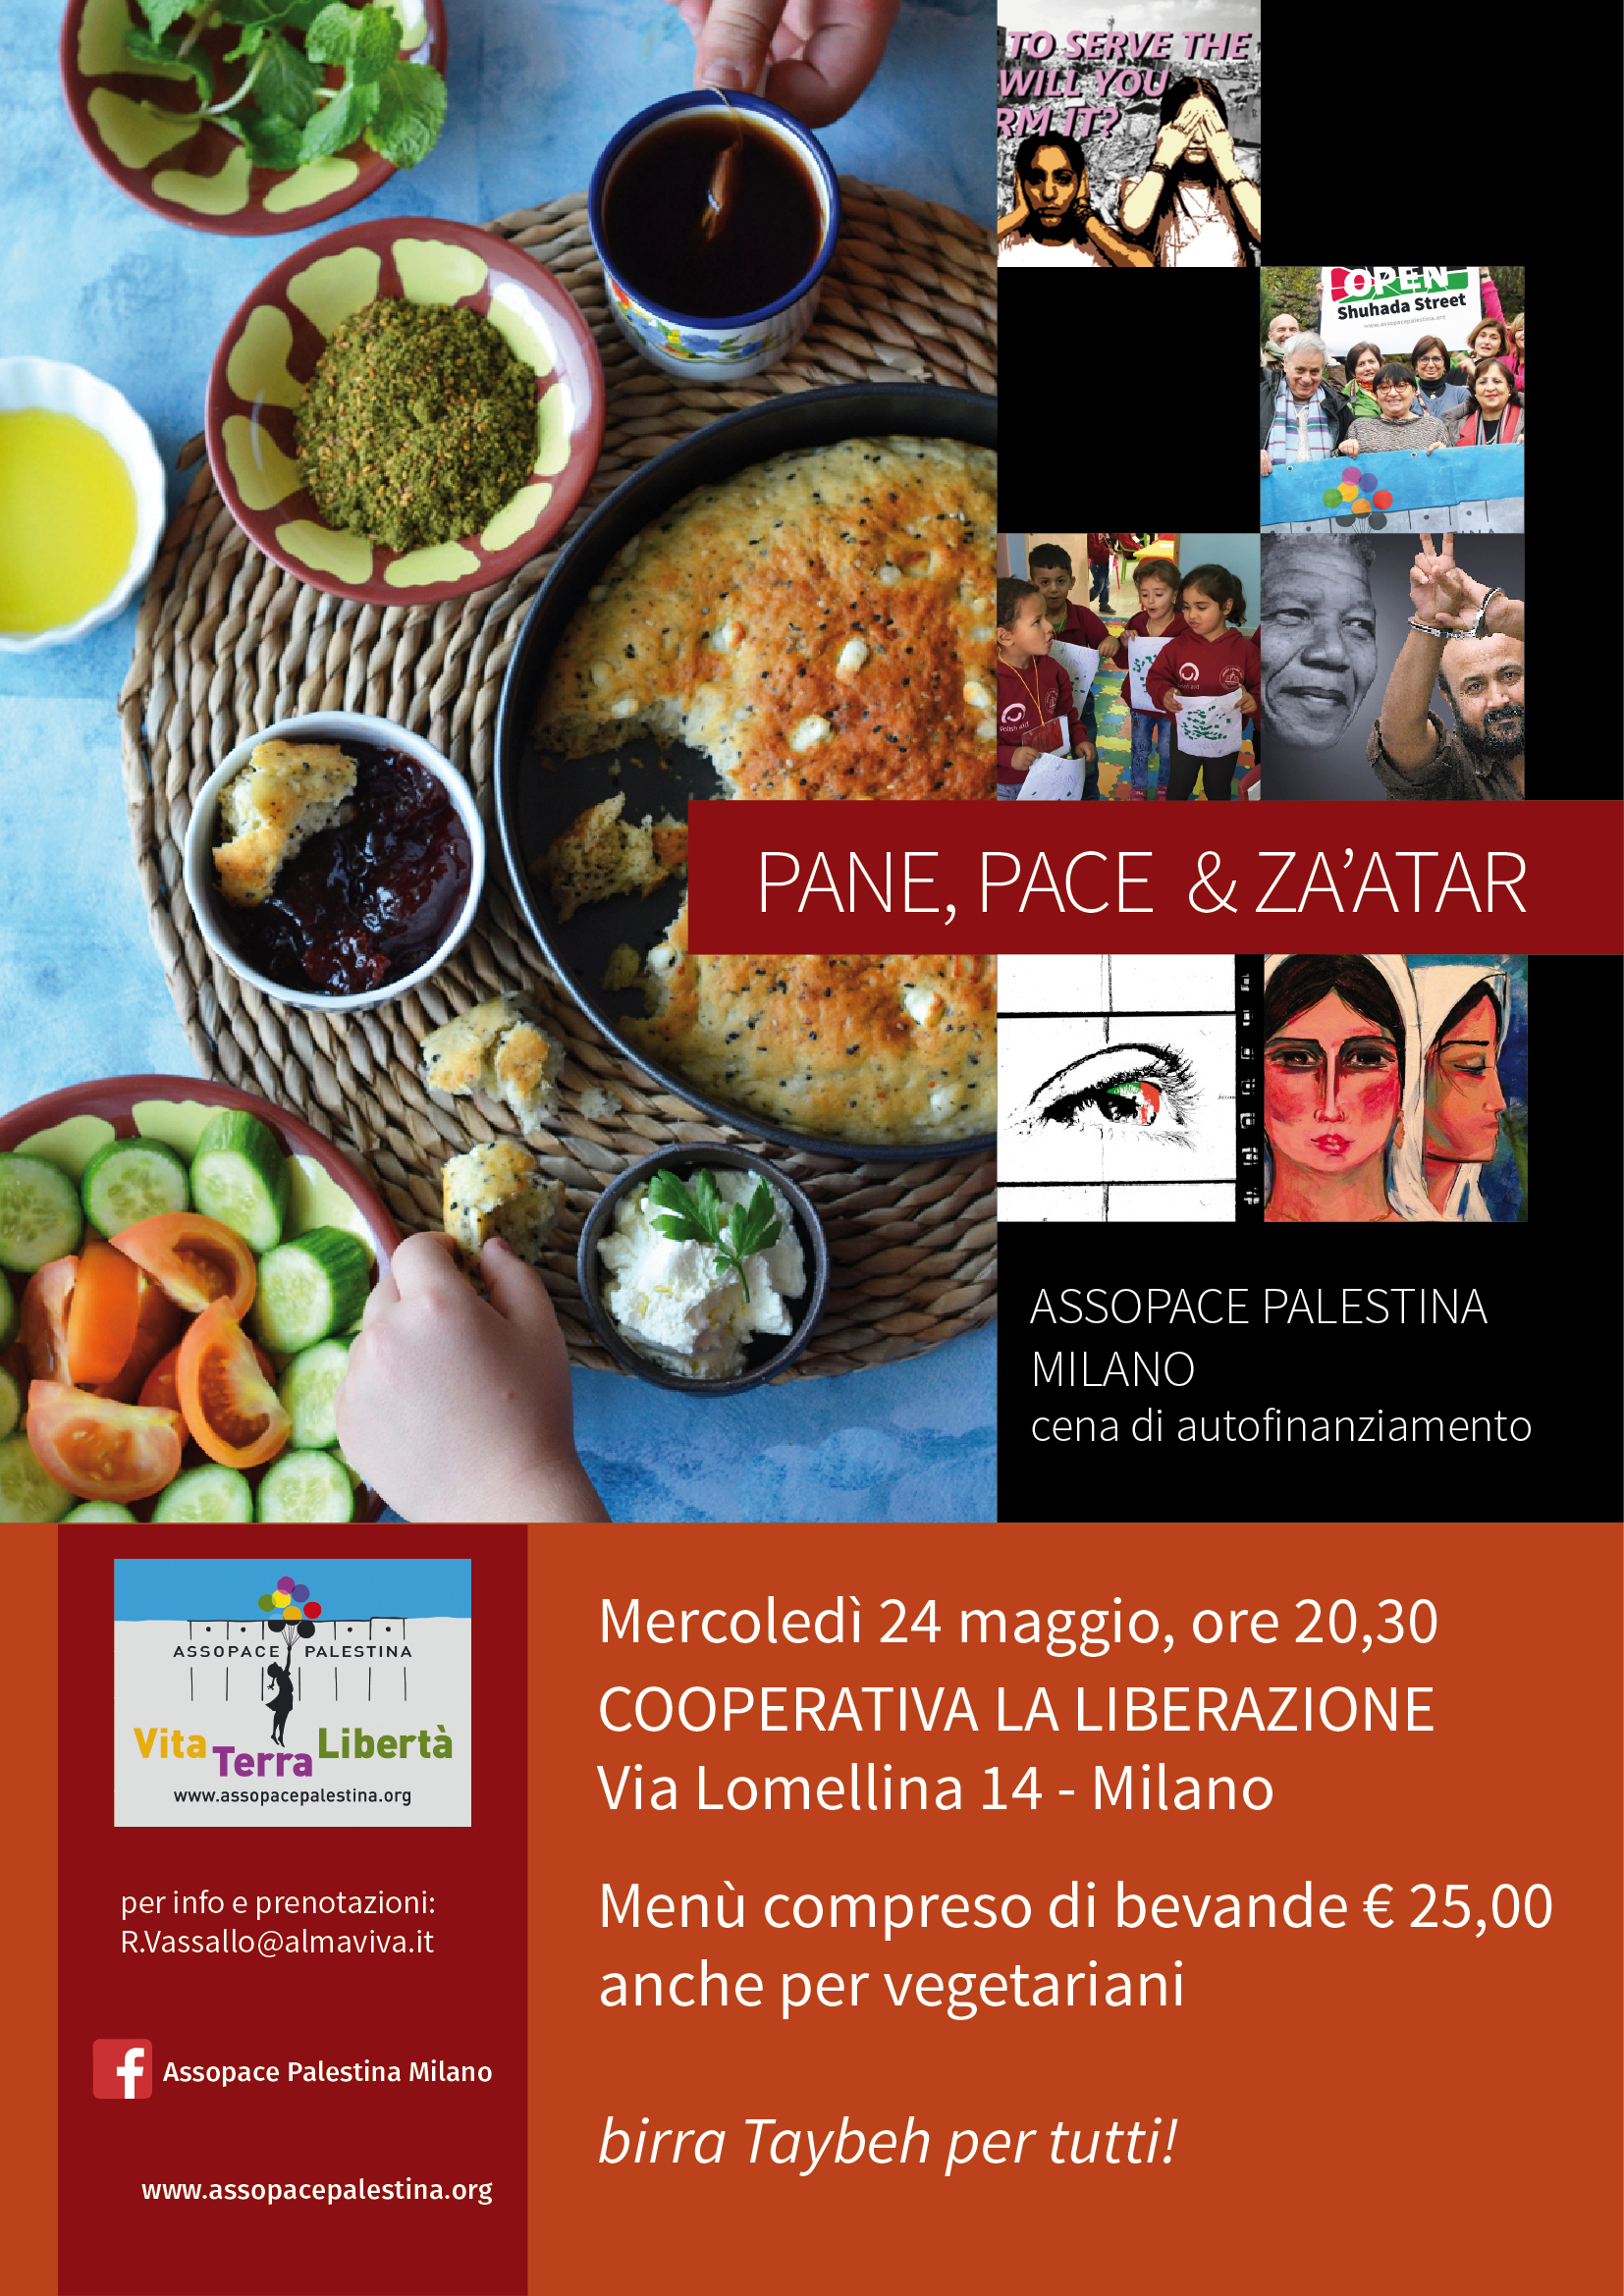 Milano 24 maggio: cena di autofinanziamento Assopace Palestina